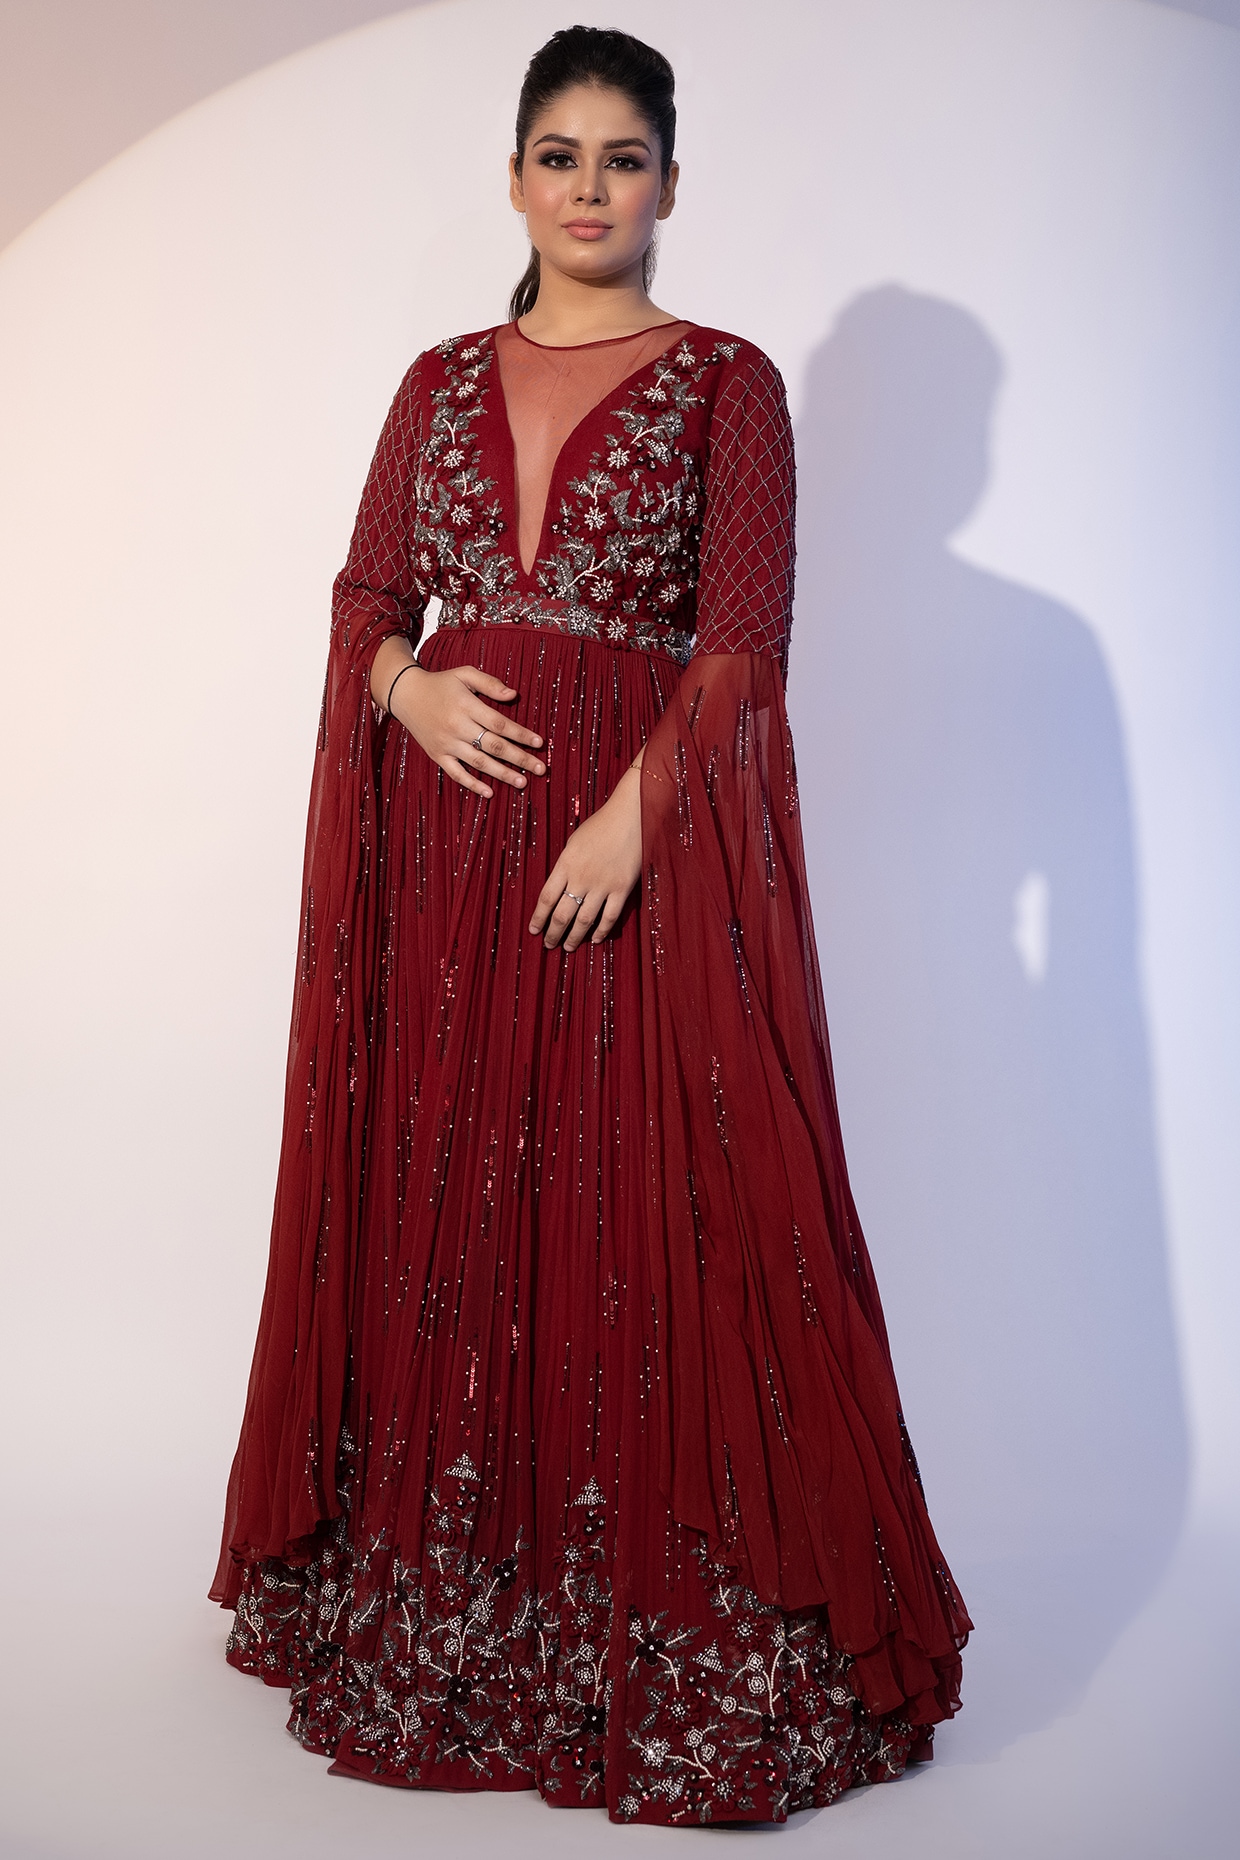 Red Colour Designer Anarkali Salwar Suit in Net Fabric.